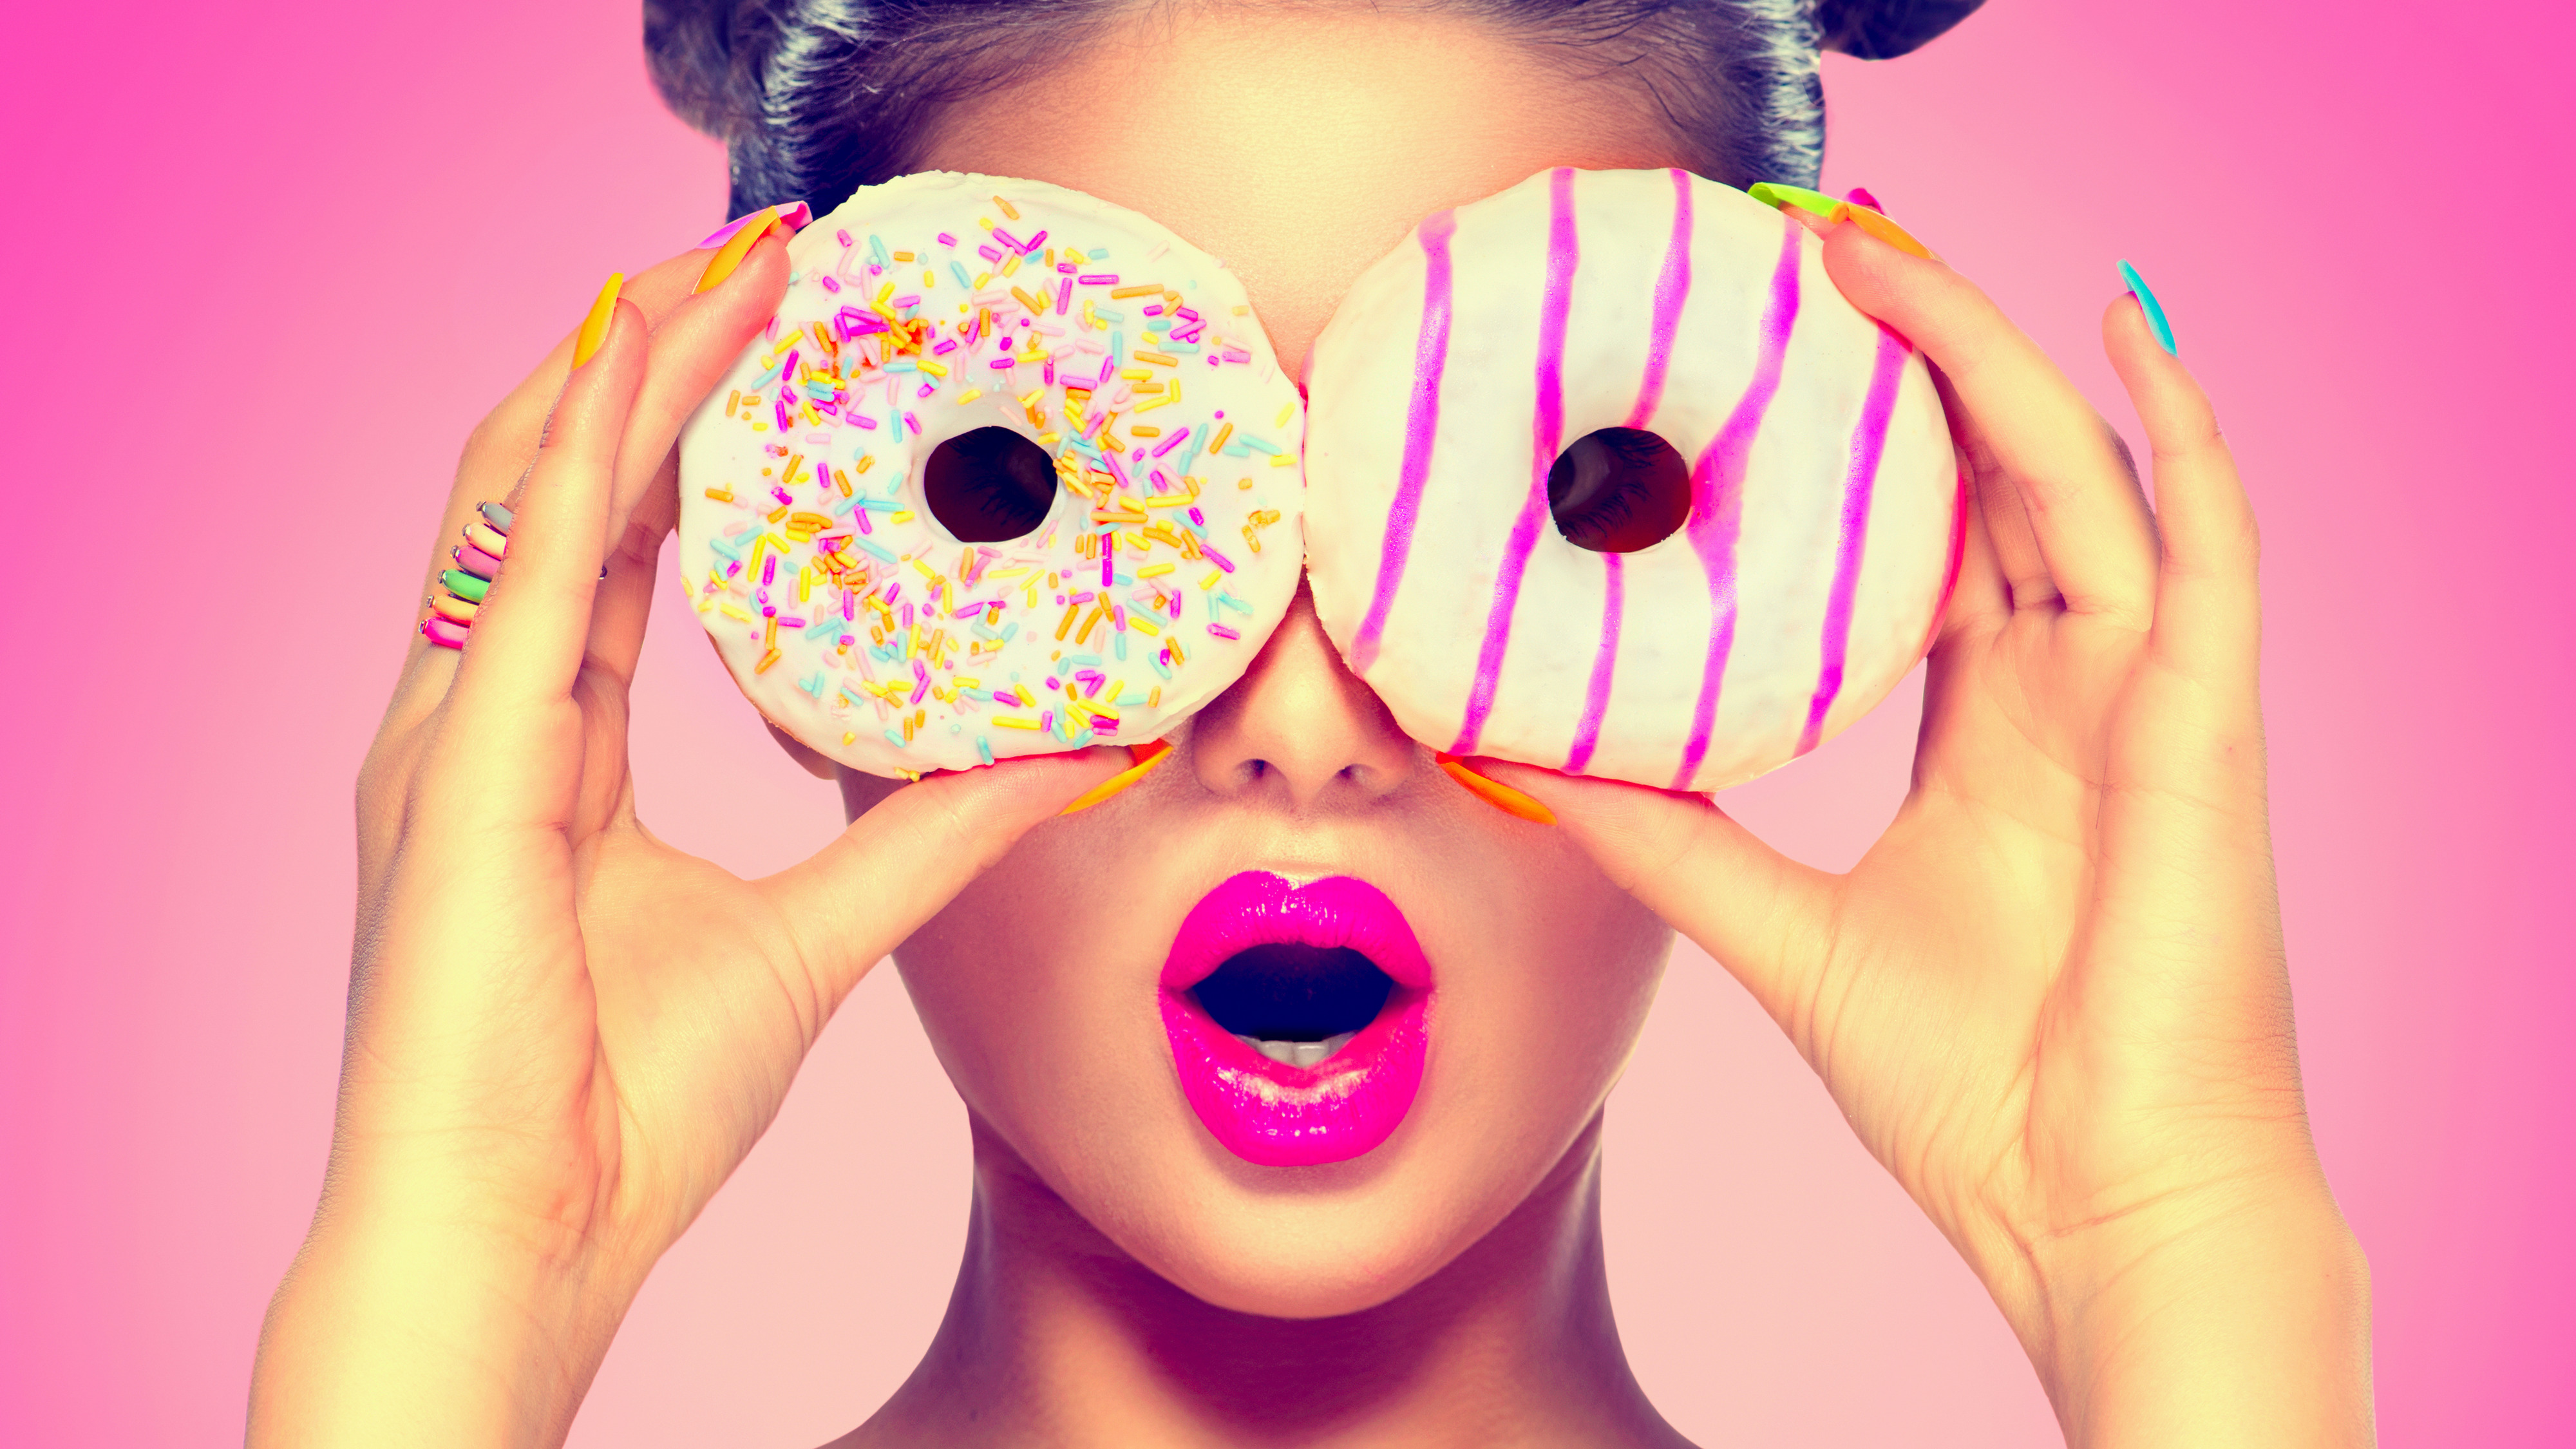 Картинка на аватарку для женщины прикольные. Девушка с пончиком. Фотосессия с пончиками. Яркая девушка. Яркая аватарка.